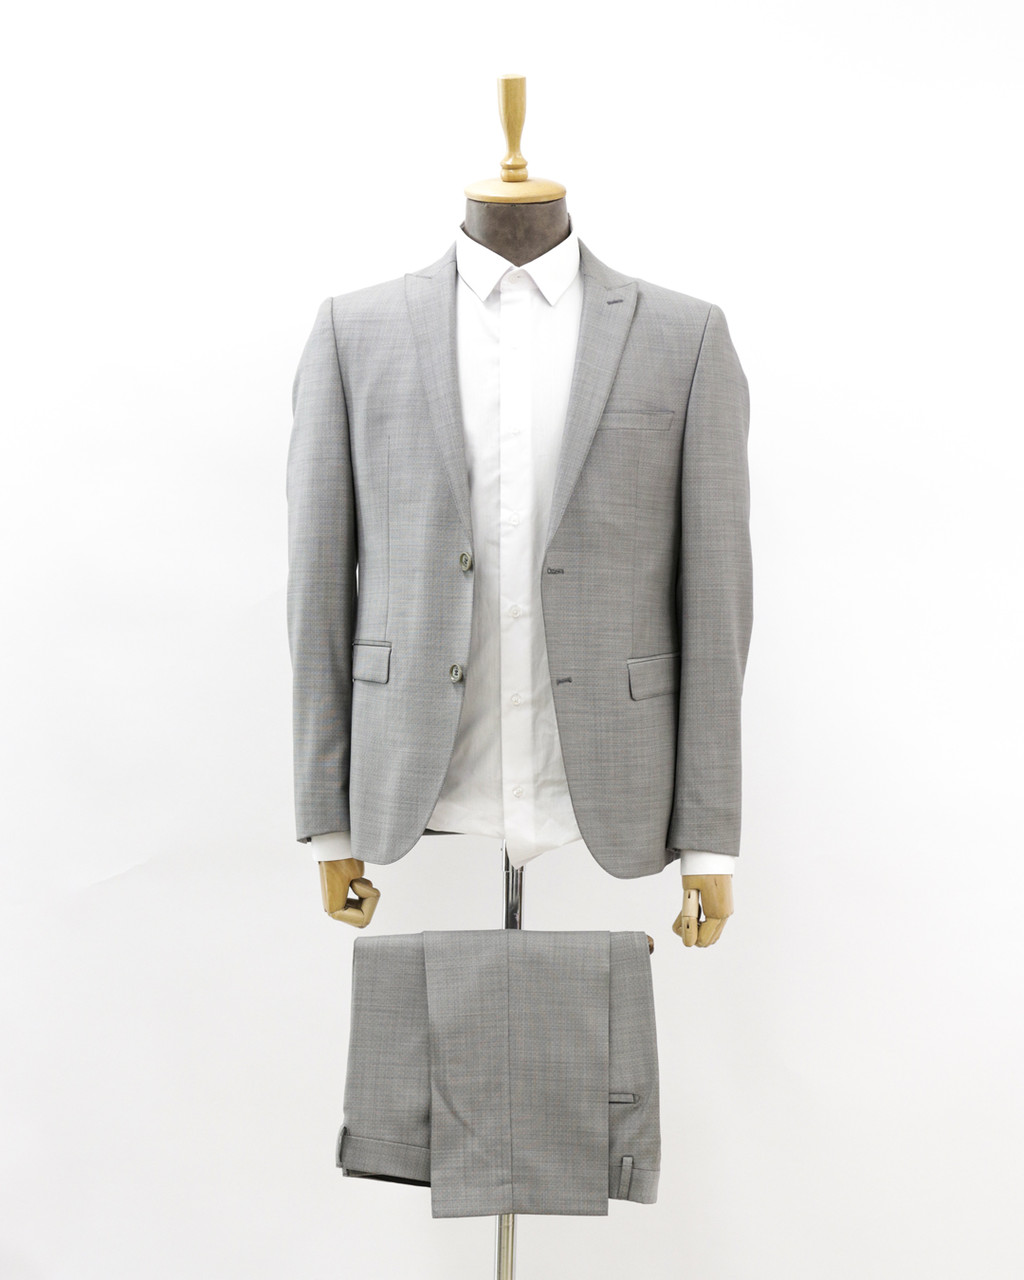 Мужской деловой костюм «UM&H 35272218» серый, фото 1